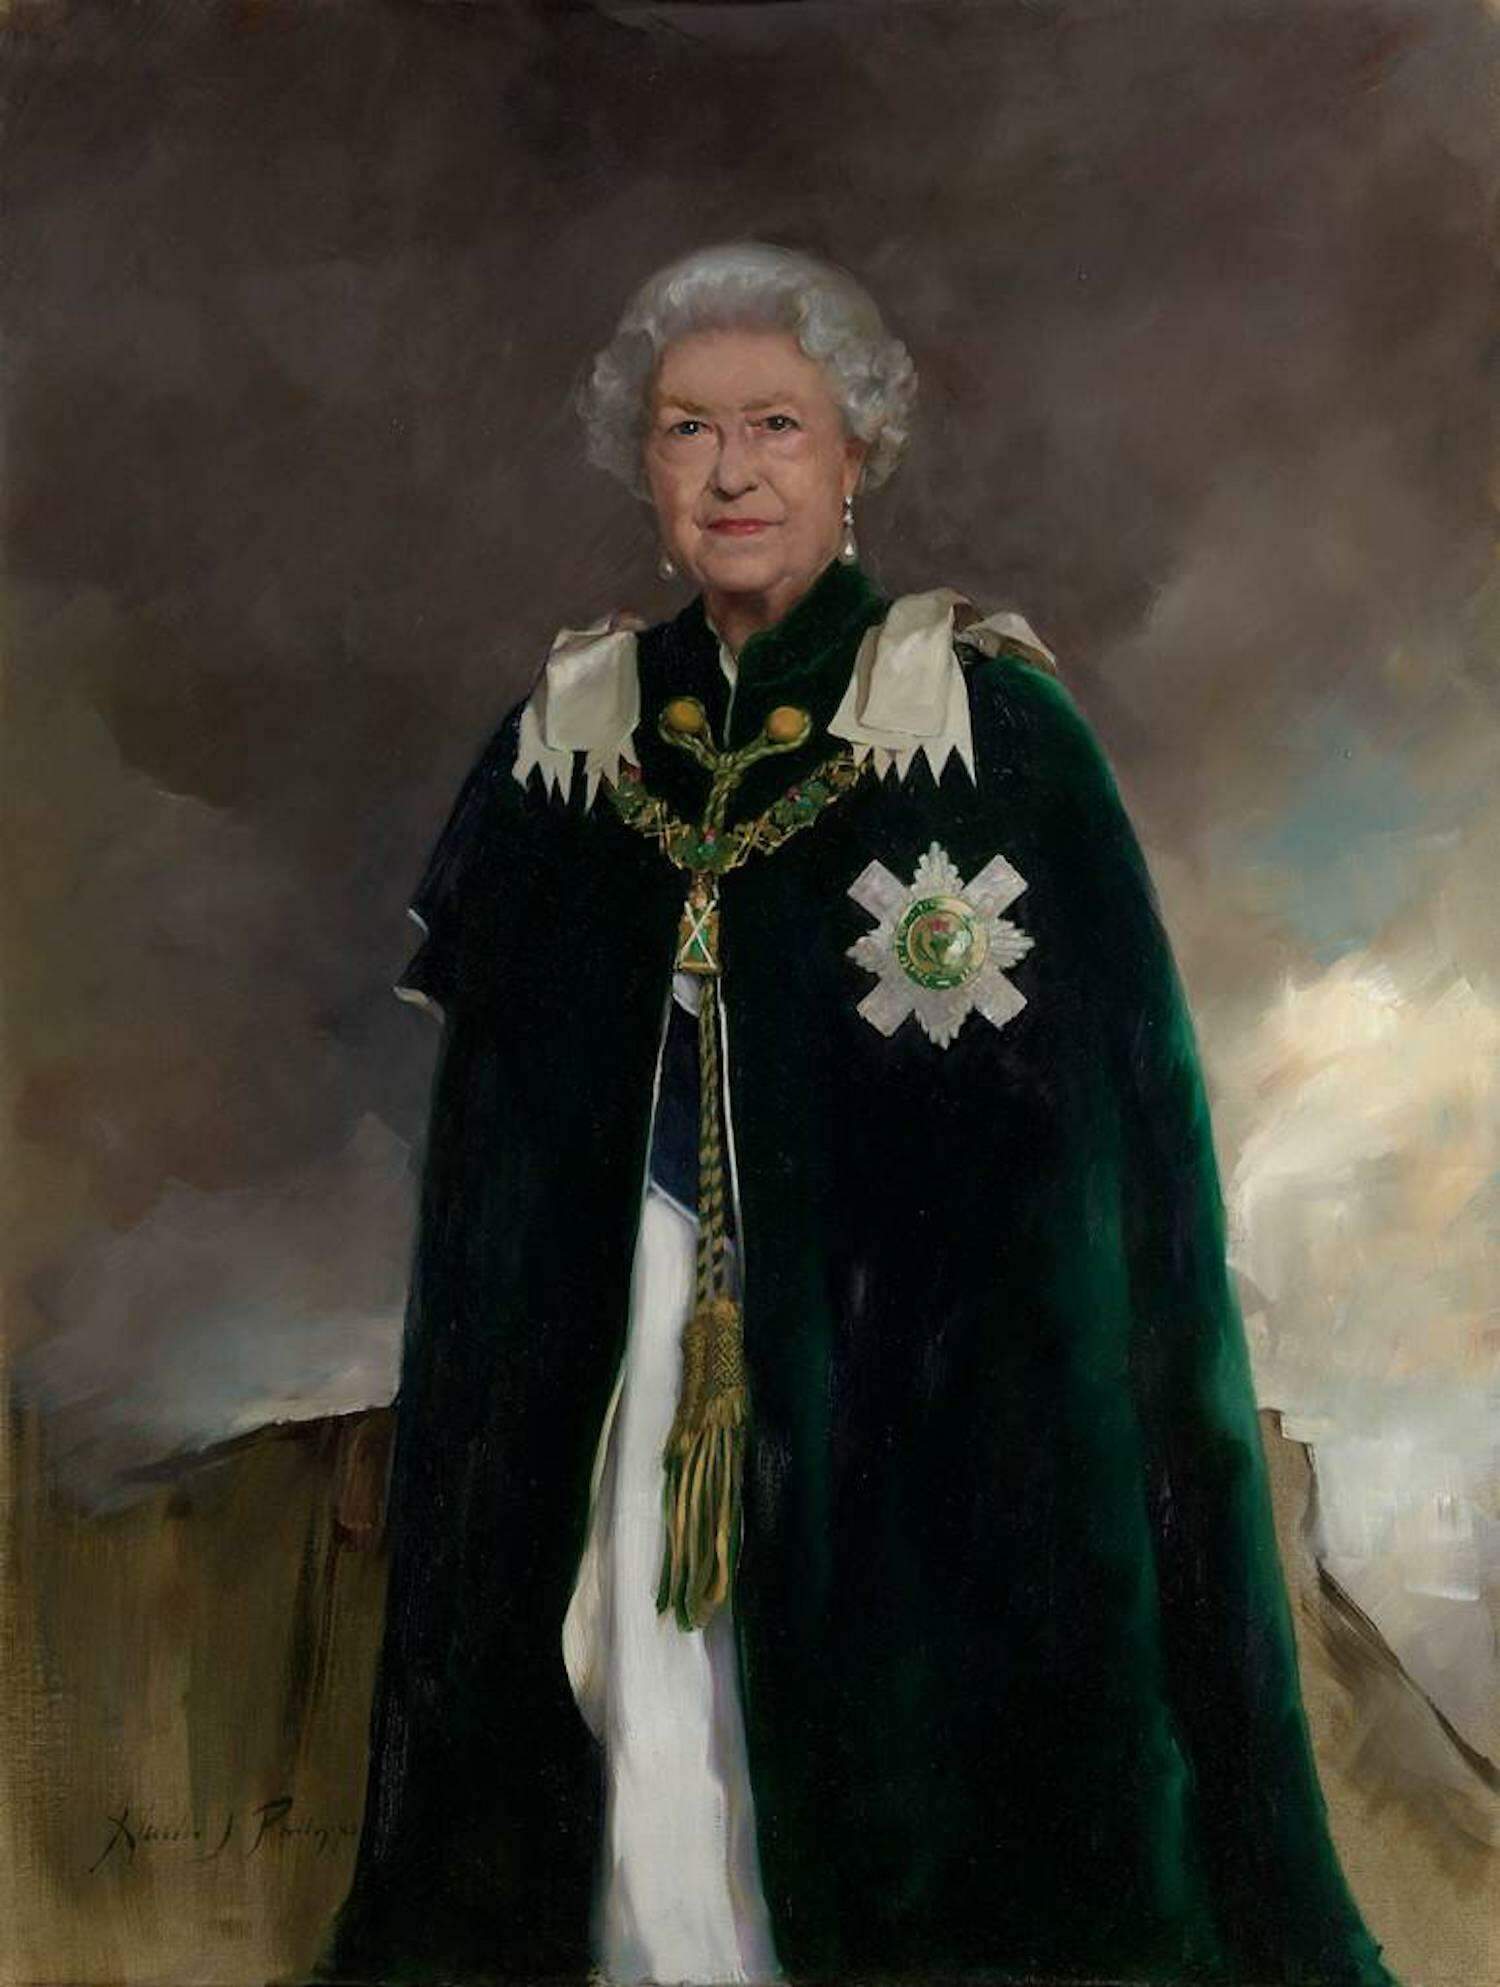 Um novo retrato da rainha Elizabeth II.